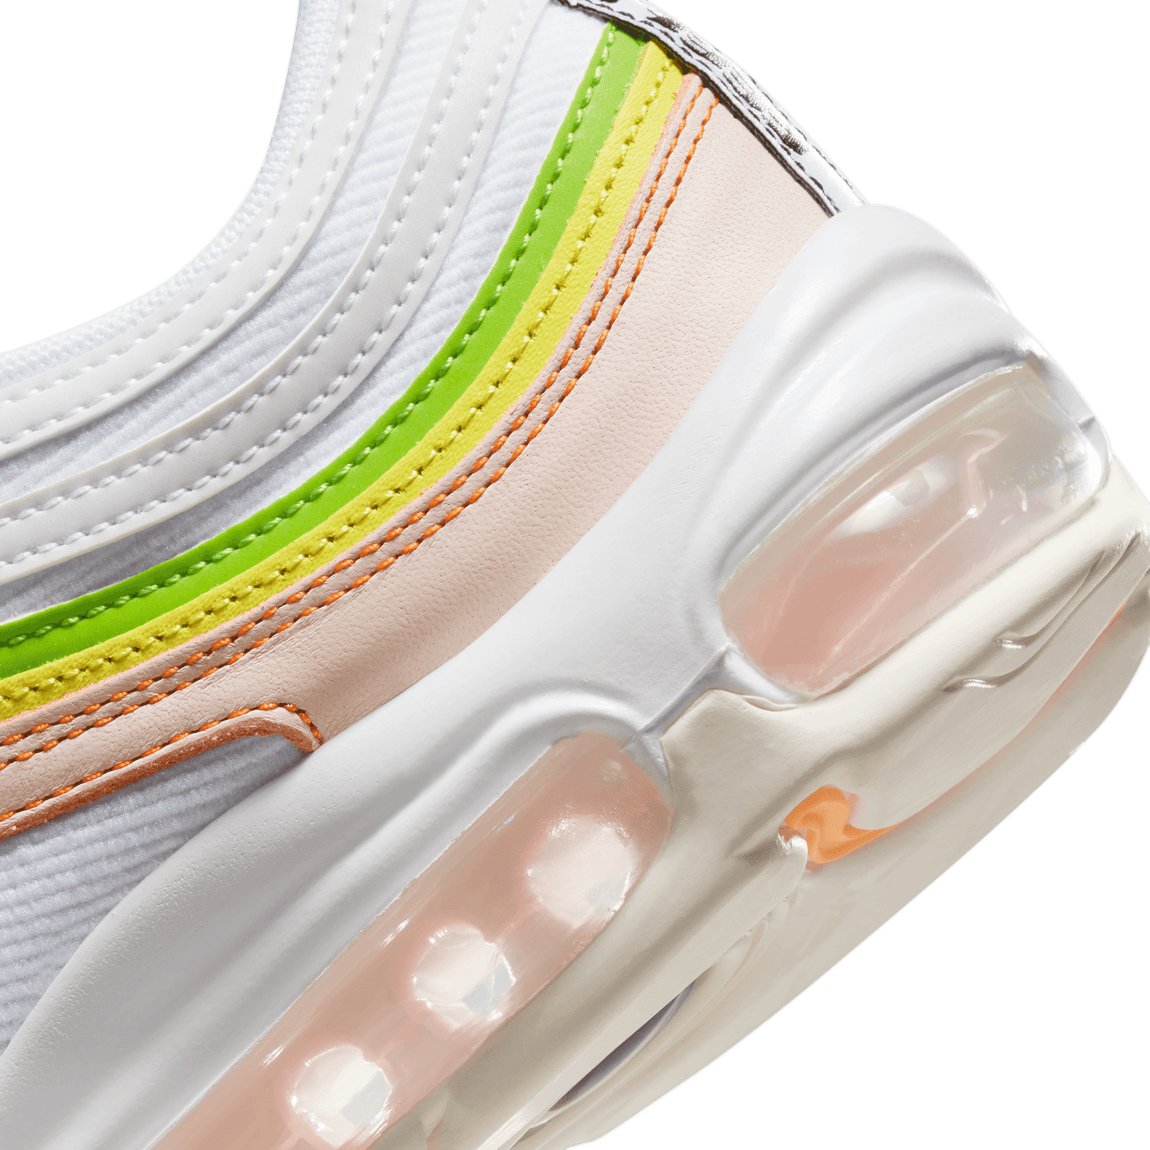 inch Regeringsverordening onwetendheid Women's Nike Air Max 97 (White/Black/Pearl Pink-Action Green) – Centre